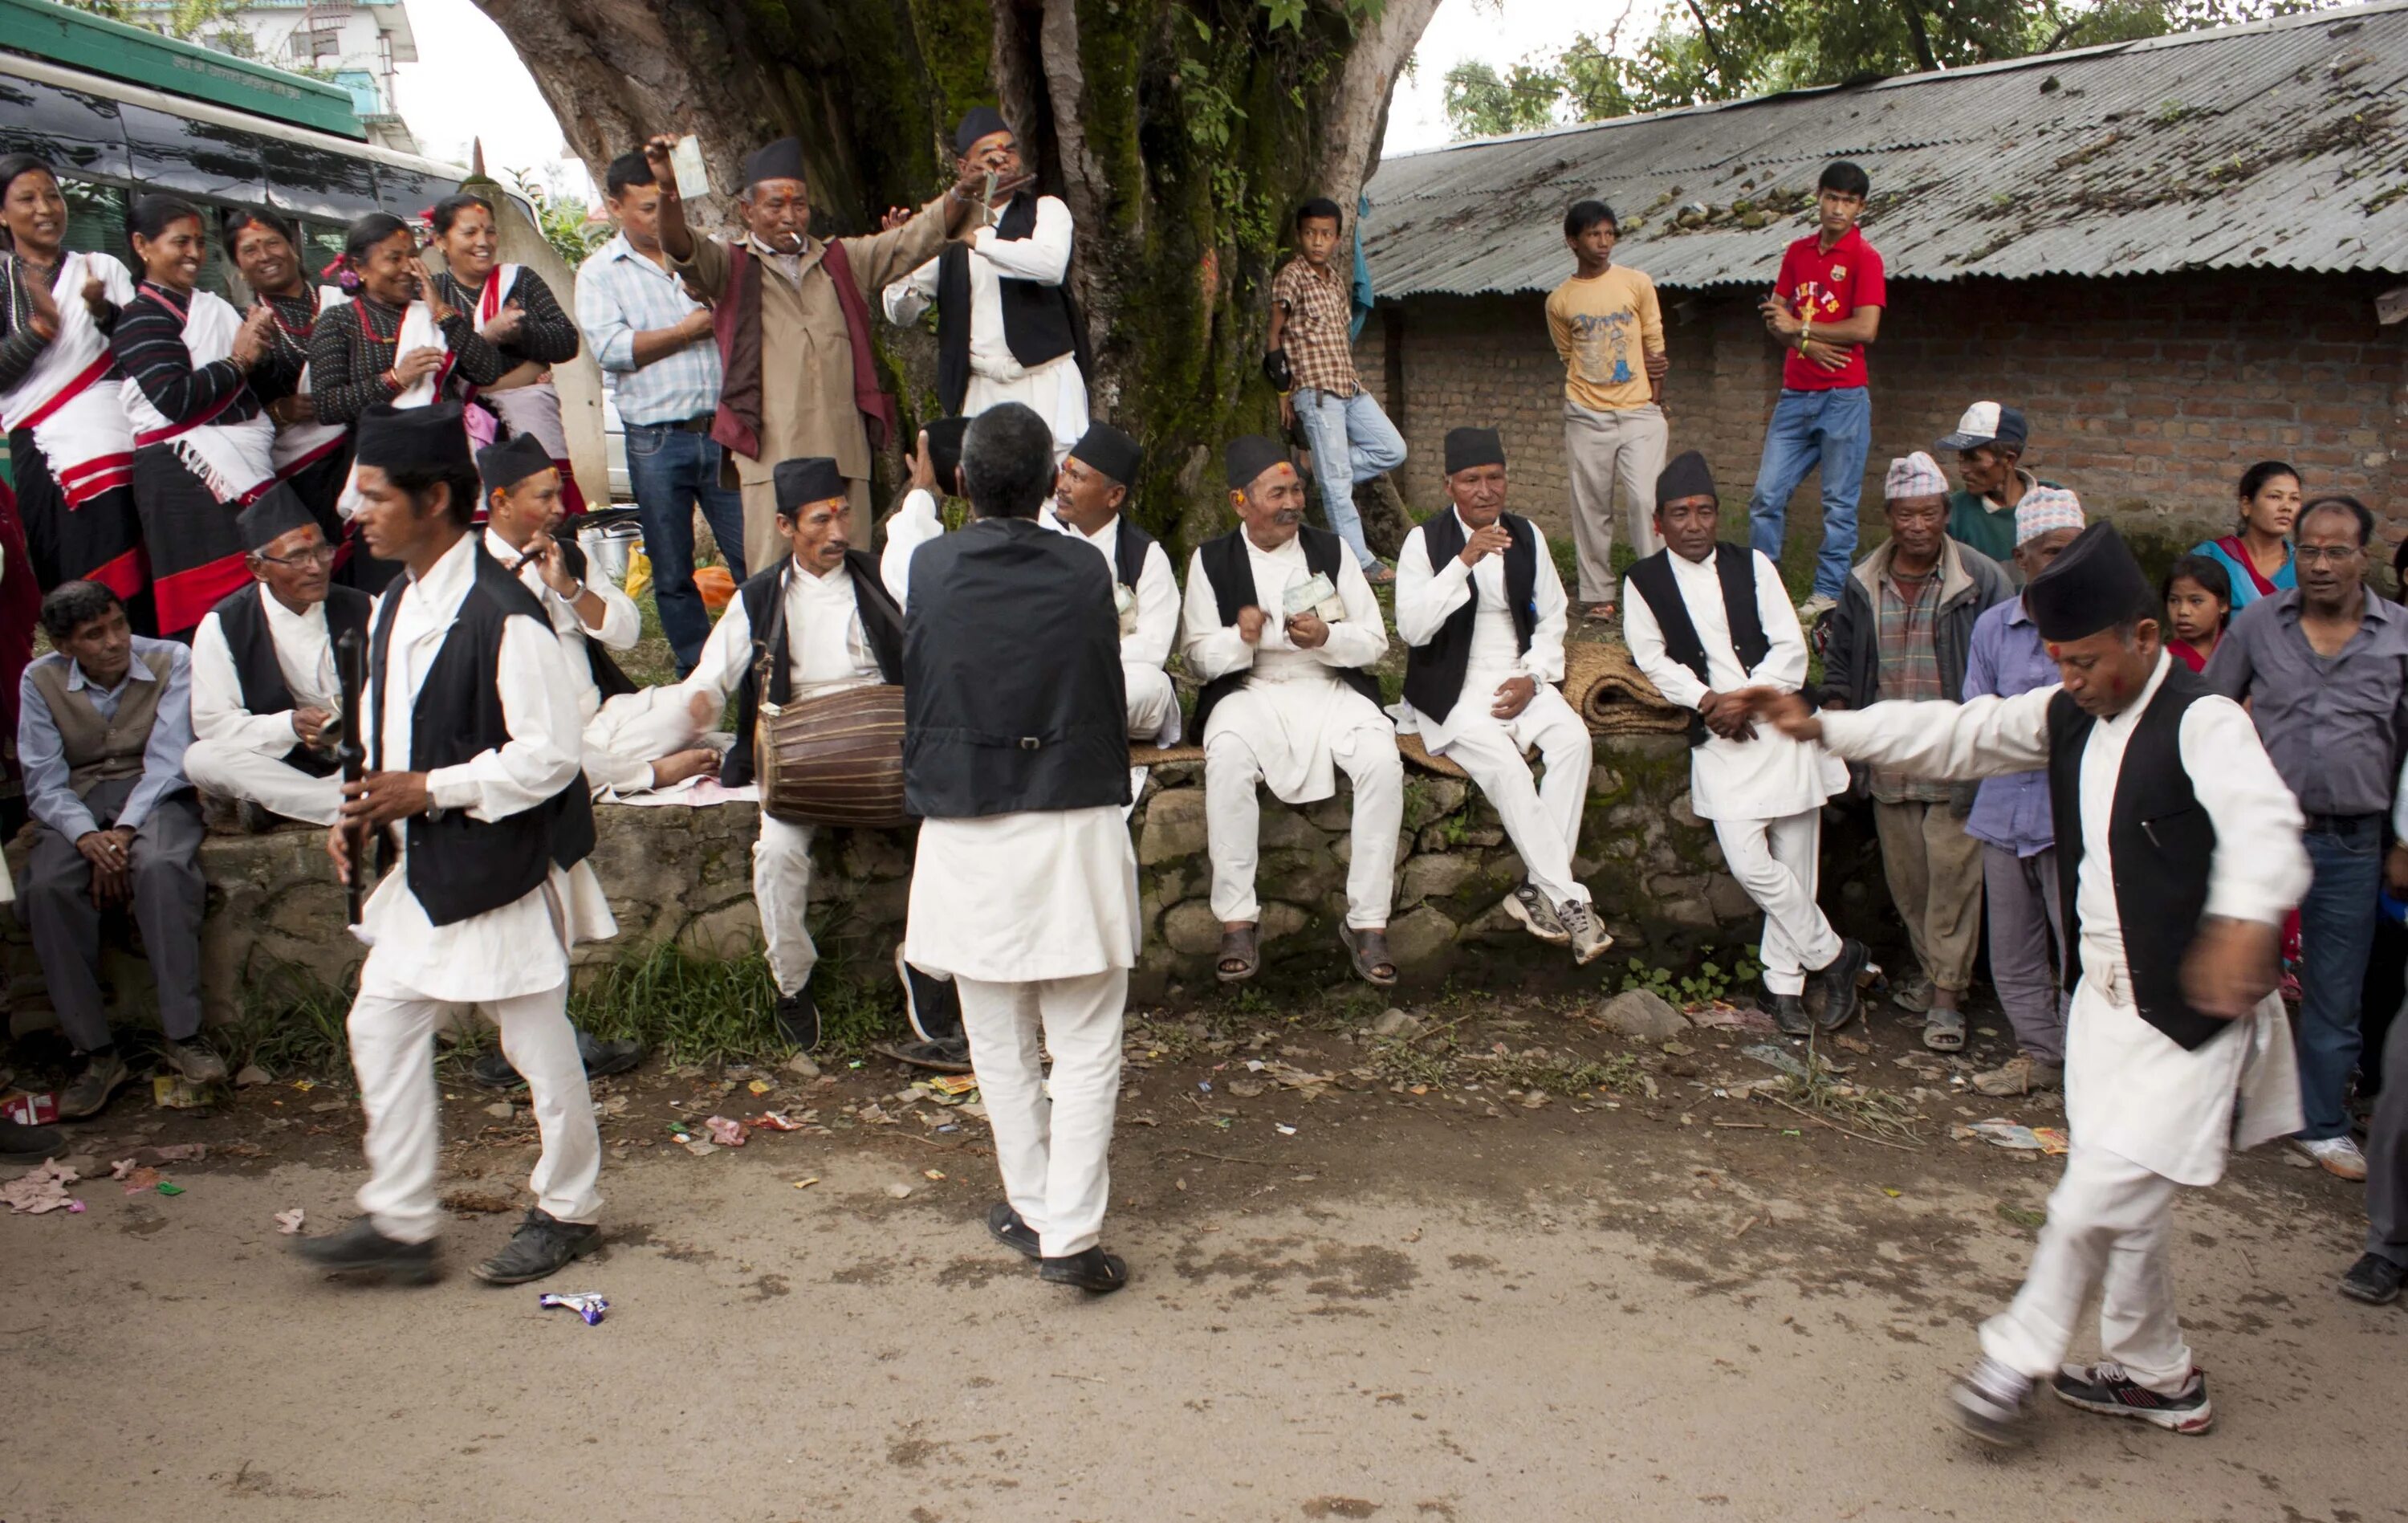 Неварская народность. Группа людей в национальных костюмах танцует на фестивале.. Панама традиционный танец. Корейские танцы традиционные мужчины.